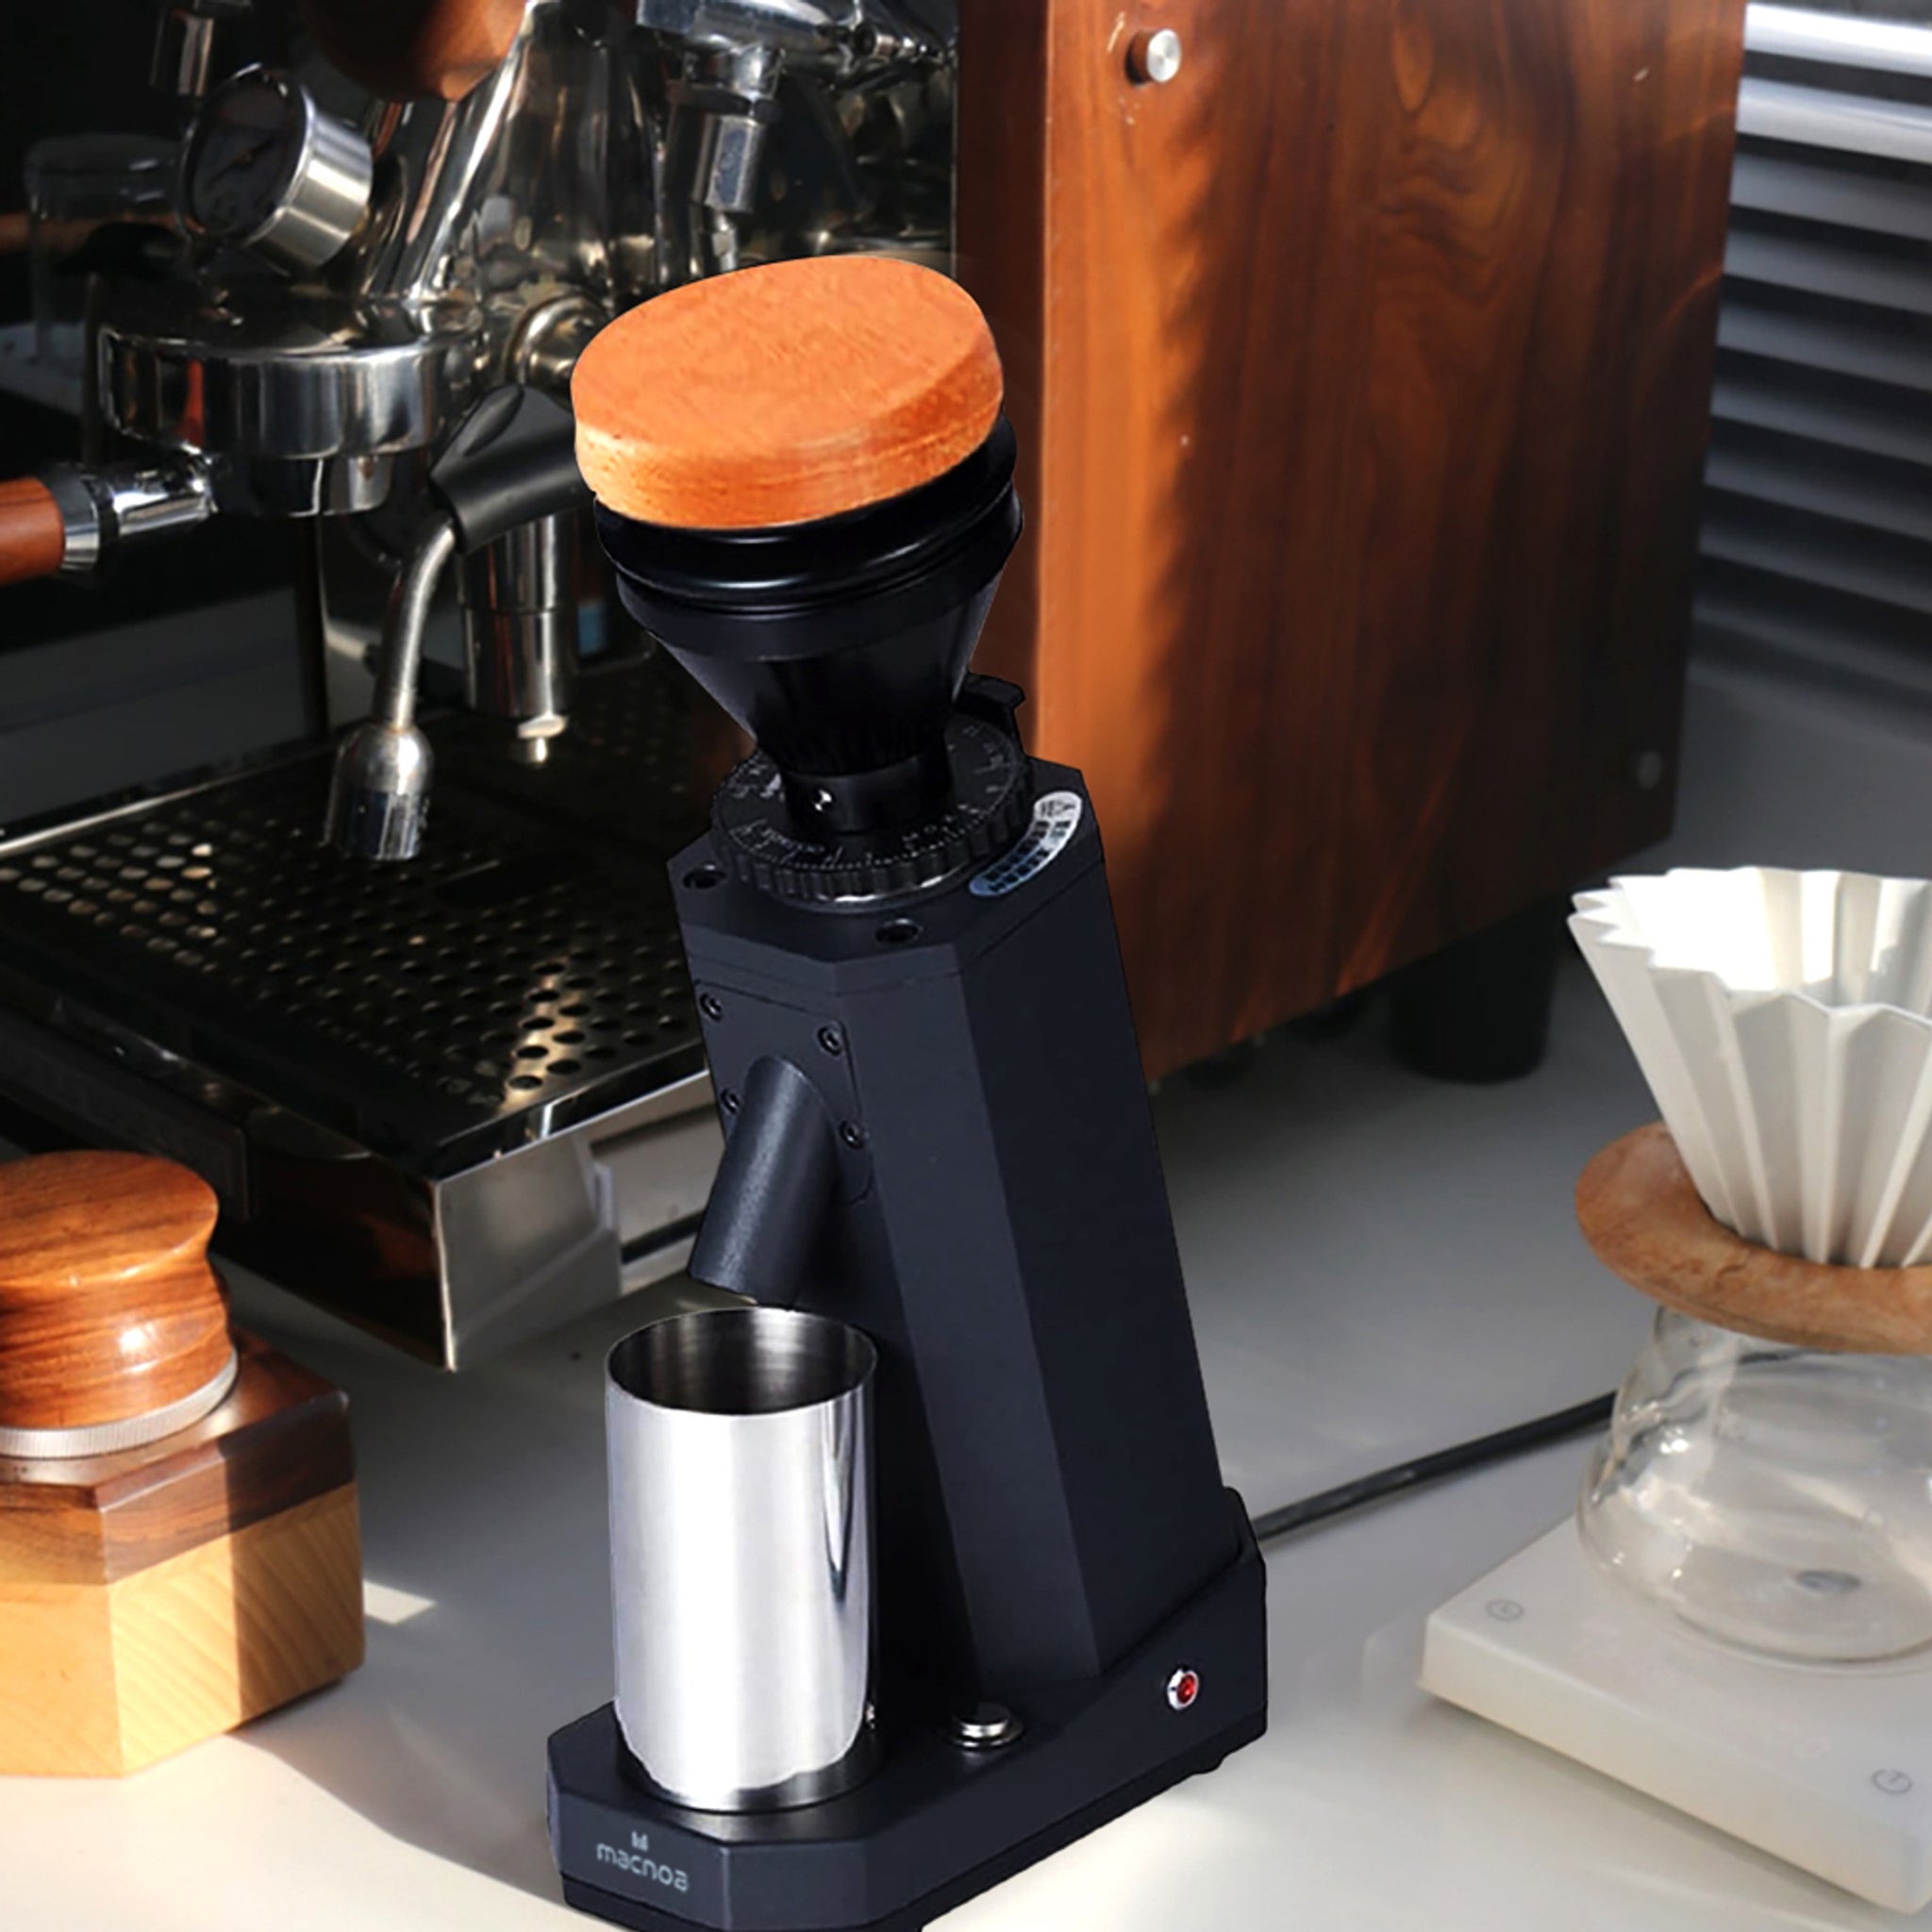 مطحنة قهوة عالية الجودة من ماكنوا / تدعم تغيير درجة الخشونة - JawdaTop